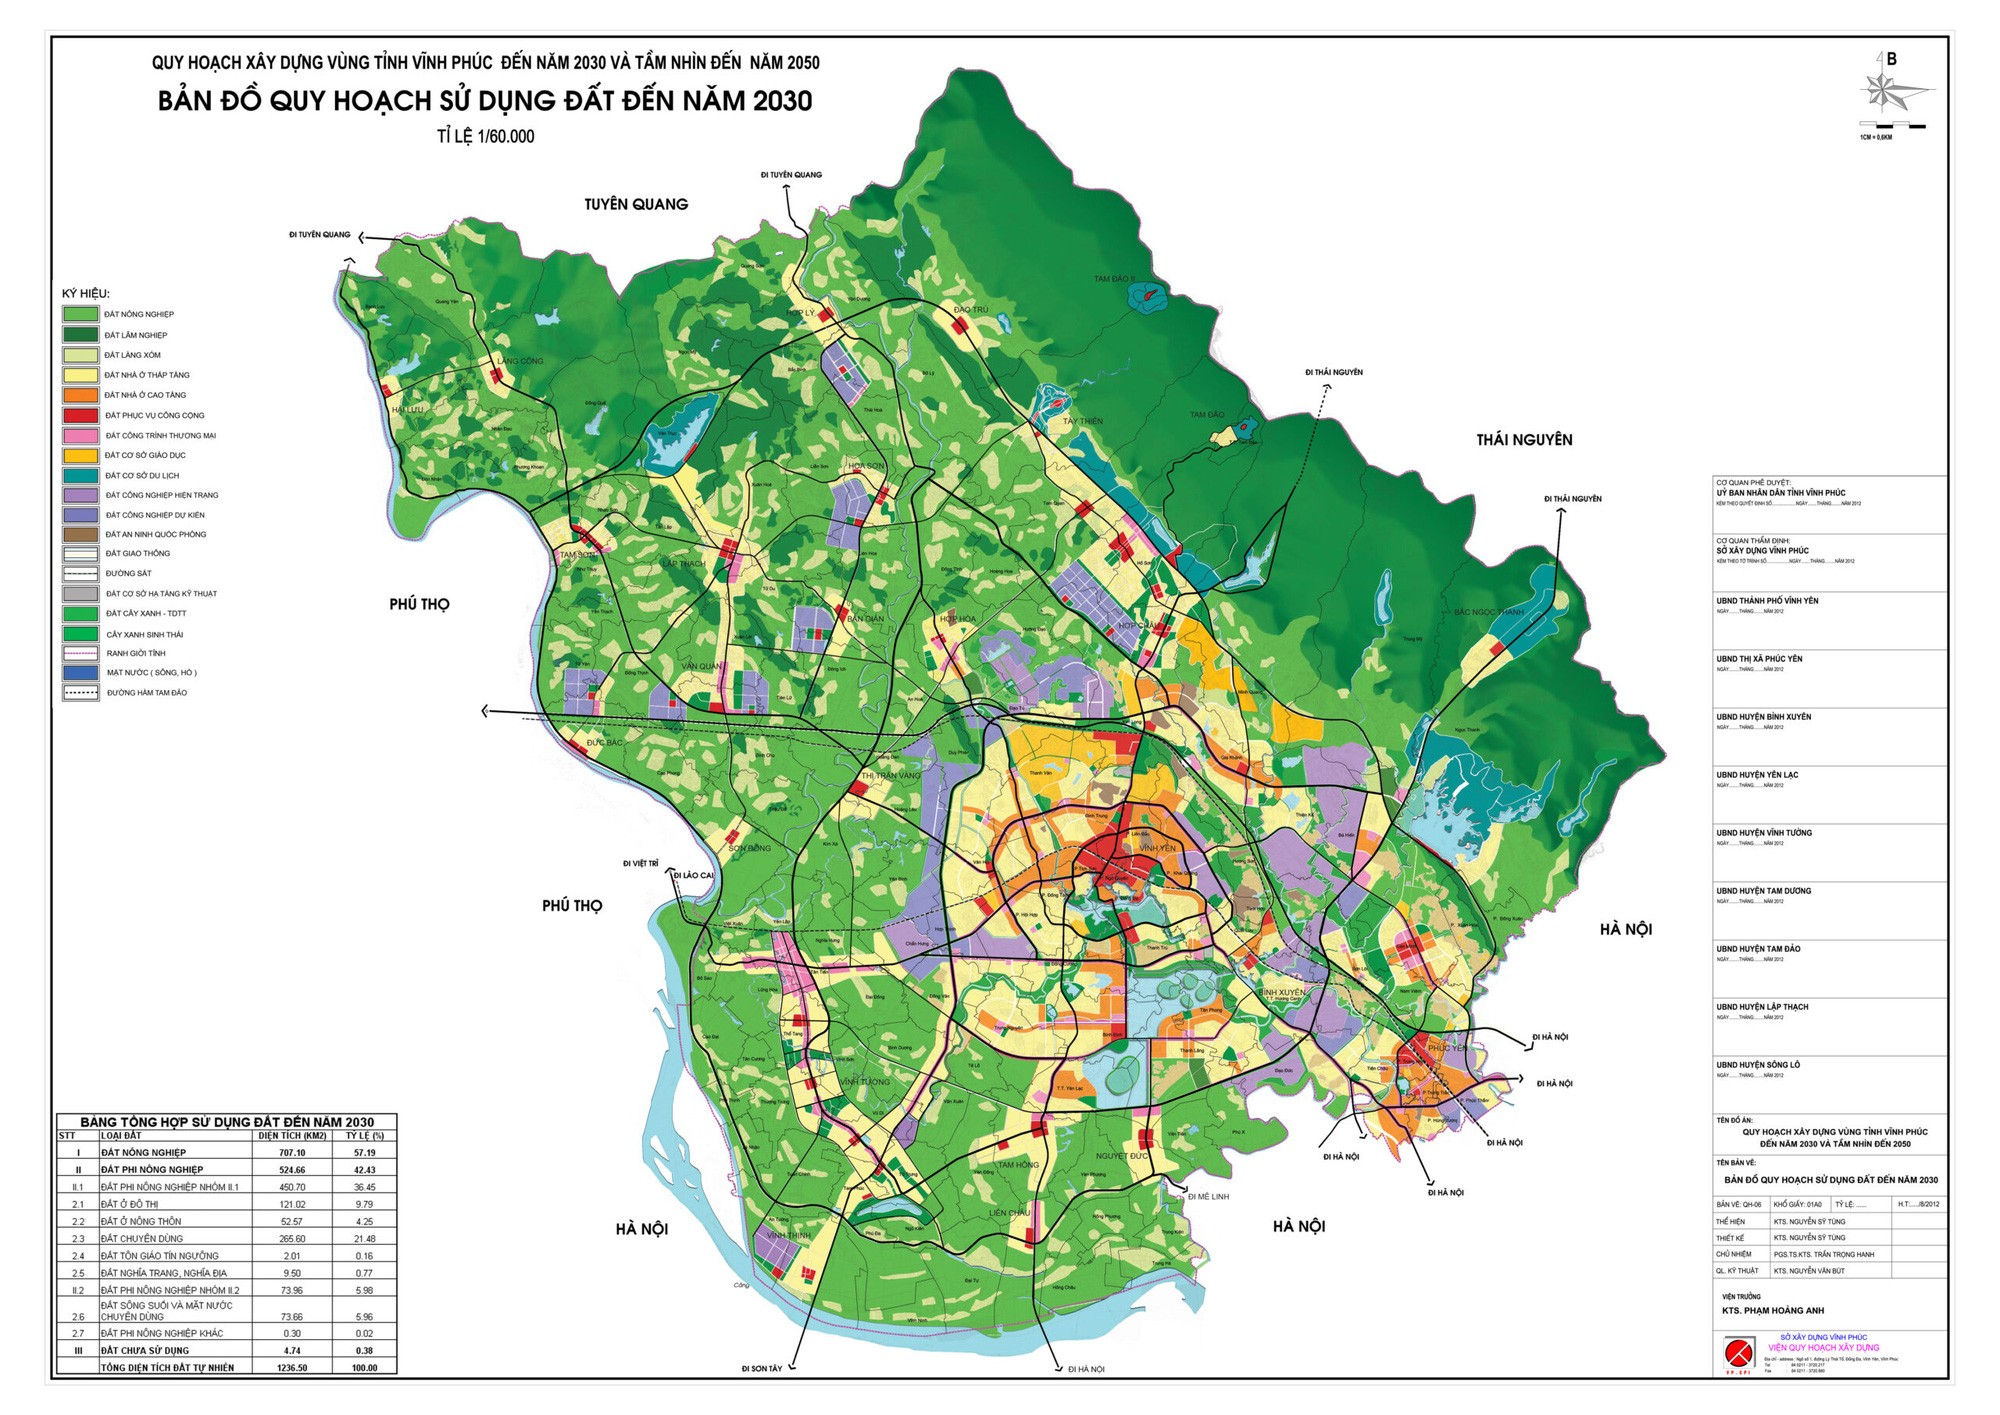 
Hình ảnh bản đồ quy hoạch sử dụng đất tỉnh Vĩnh Phúc&nbsp;
